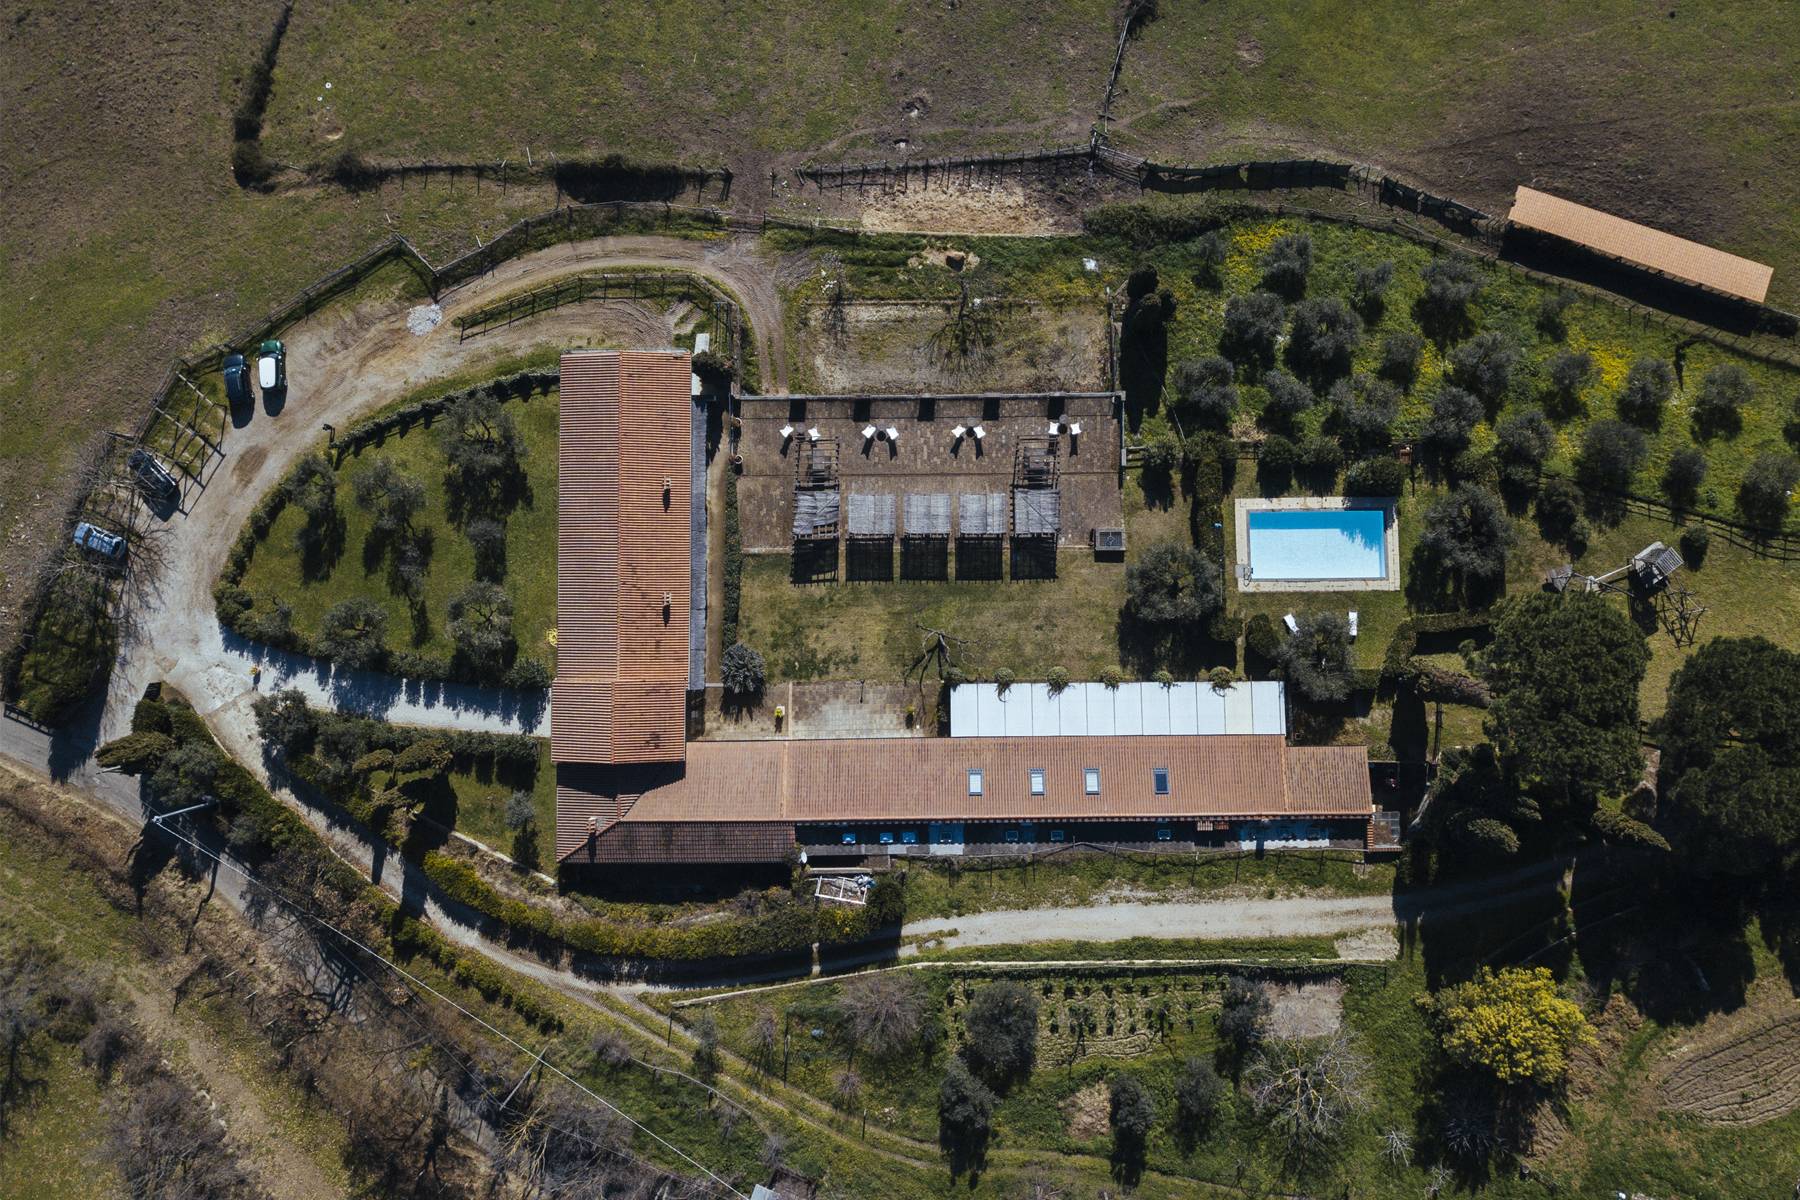 Villa in Vendita a Castelnuovo Di Porto: 5 locali, 1100 mq - Foto 2